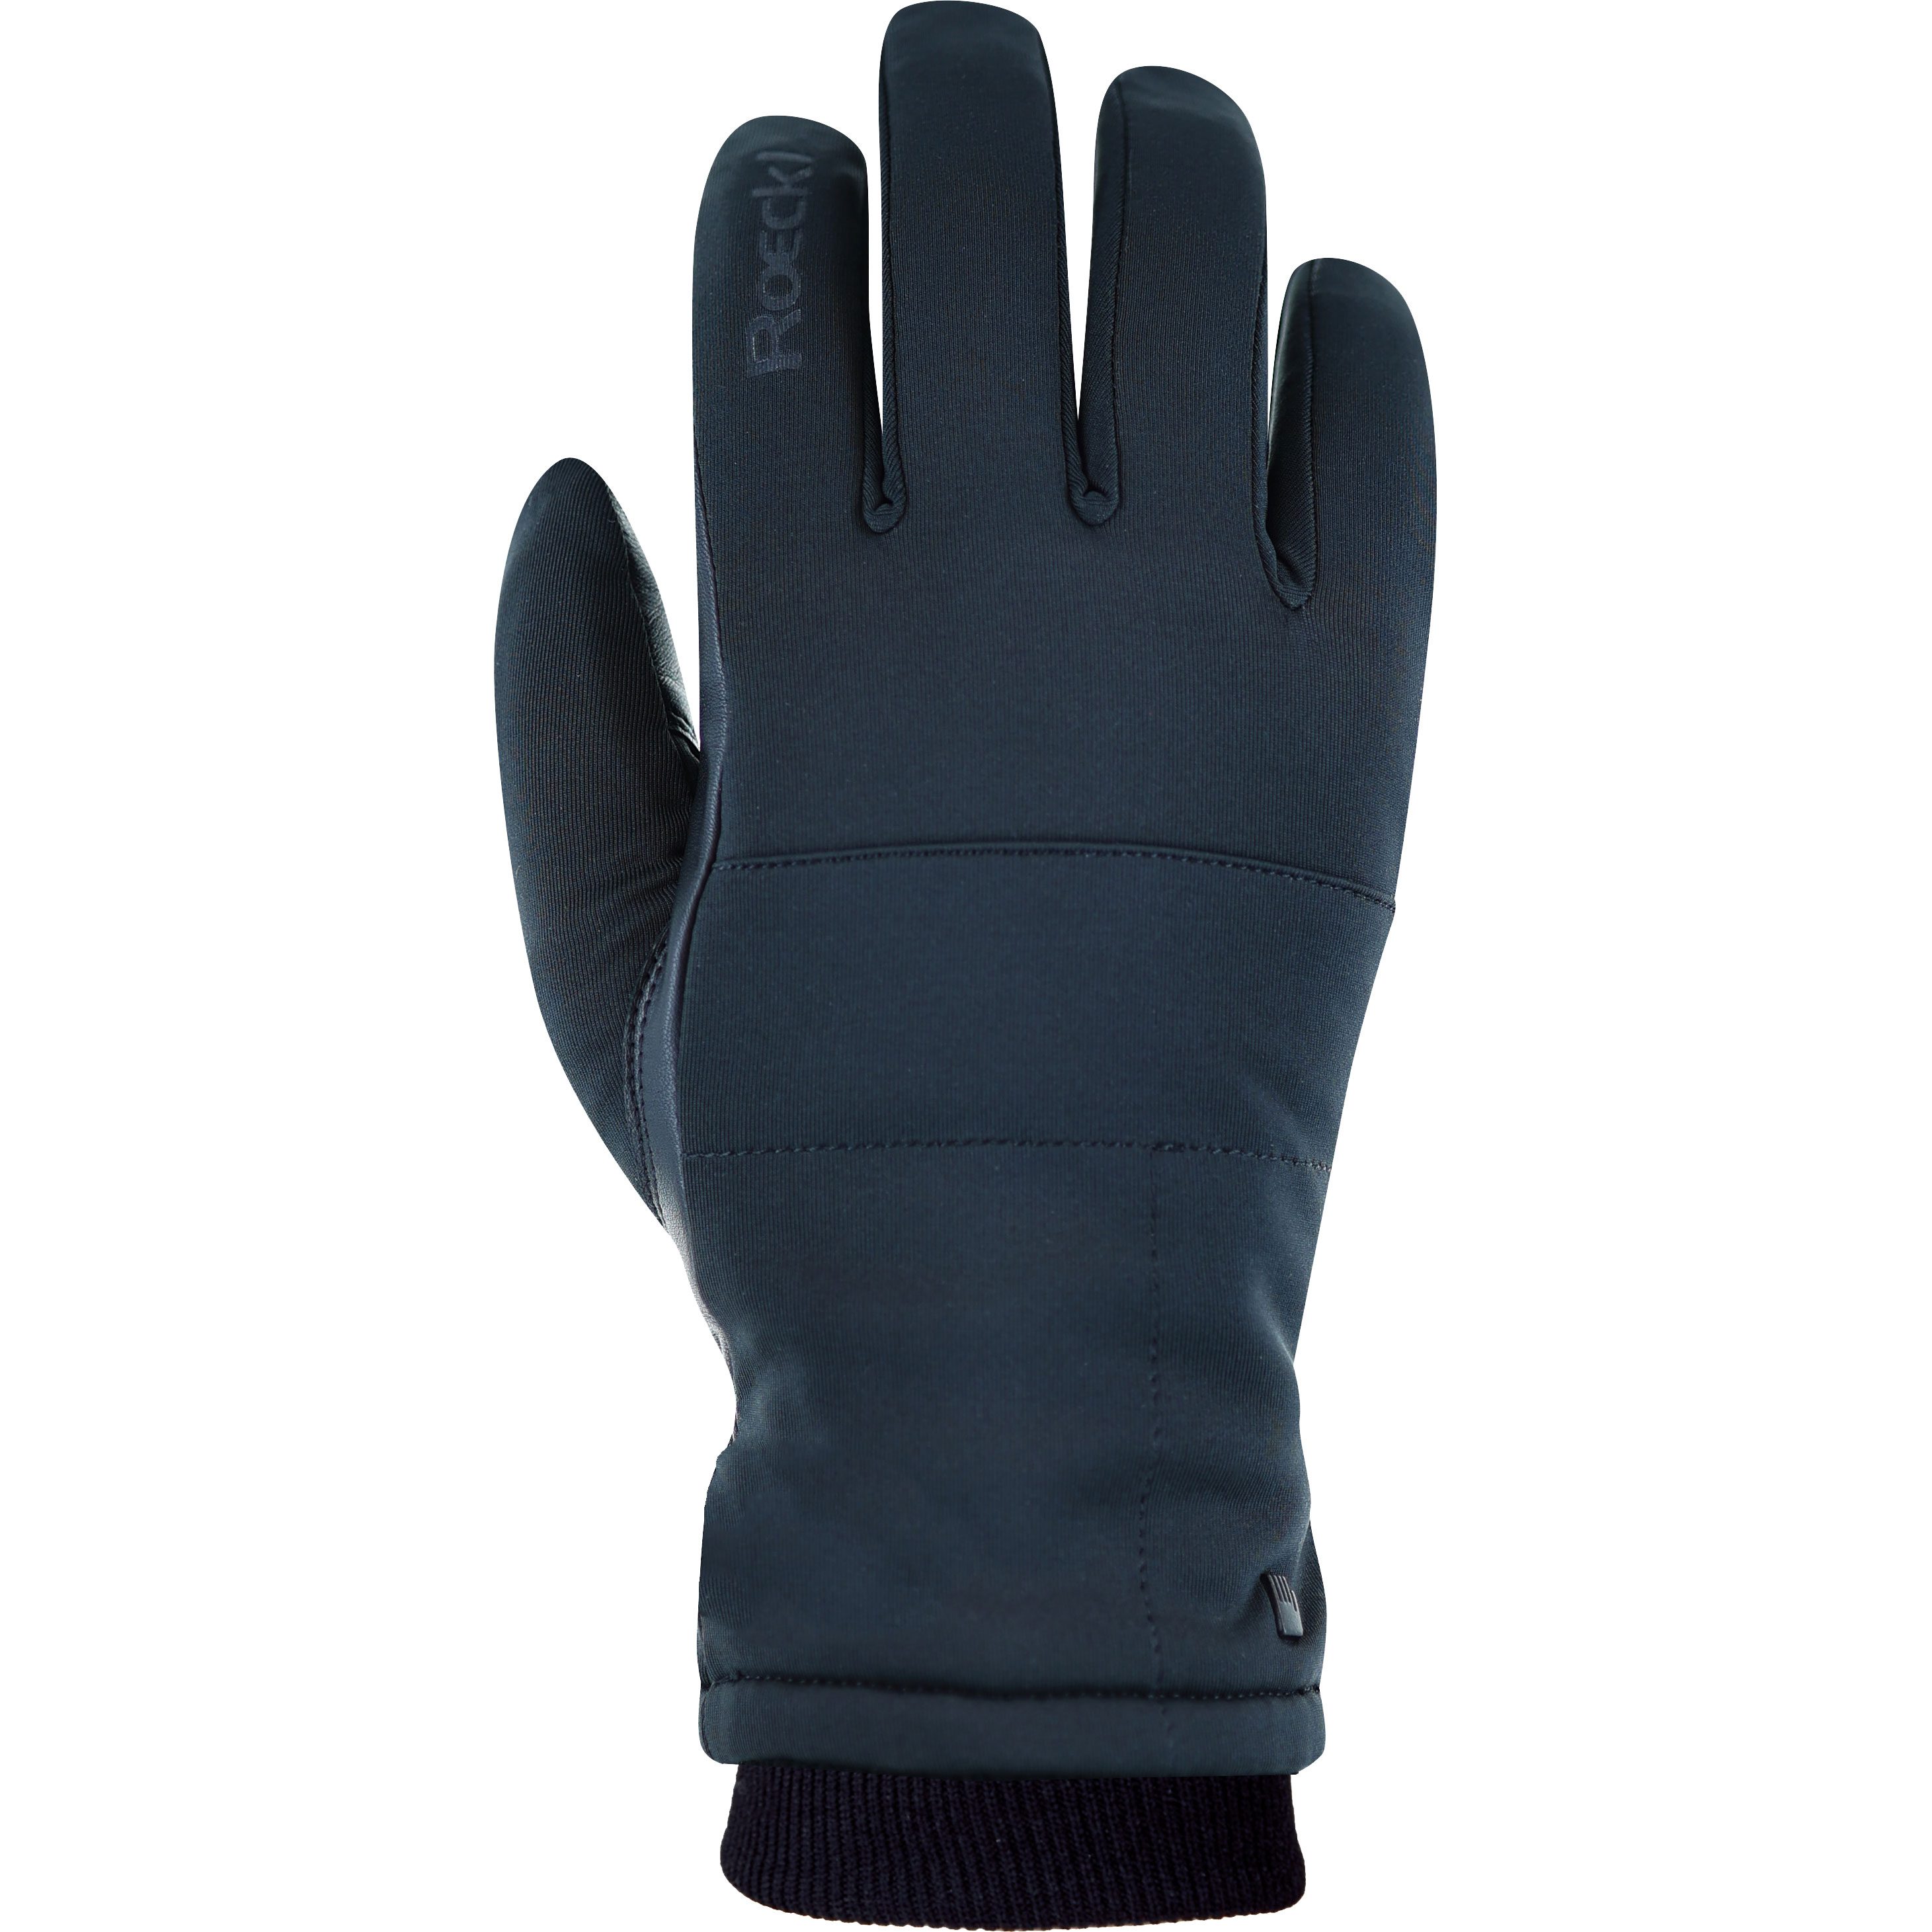 Roeckl Sports - Kolon 2 Handschuhe im Bittl kaufen Shop Sport schwarz